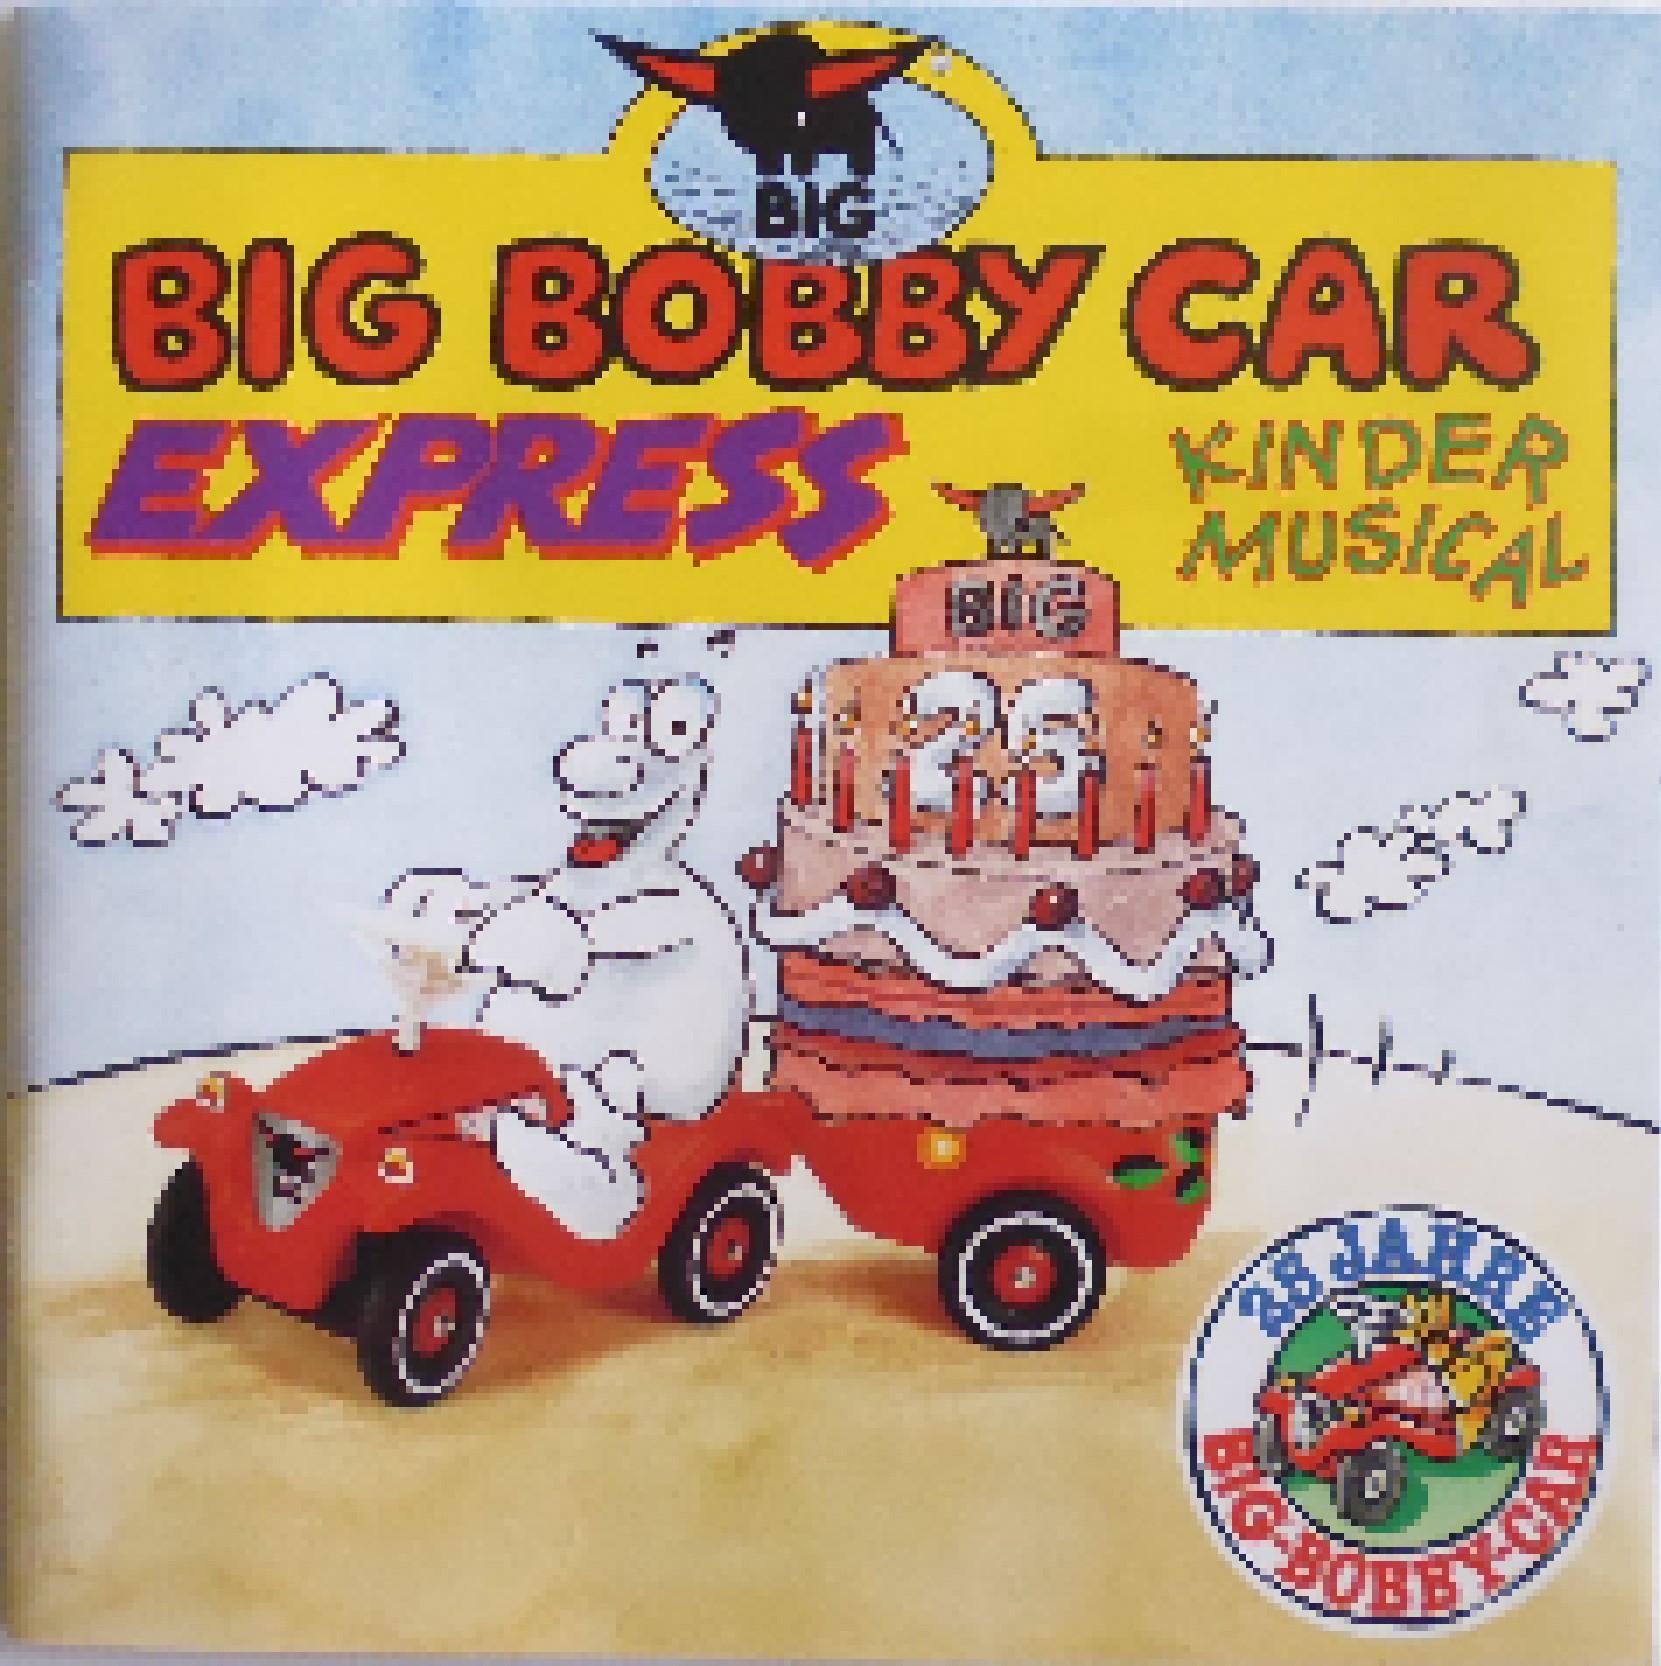 Bi Ba Bobby Car